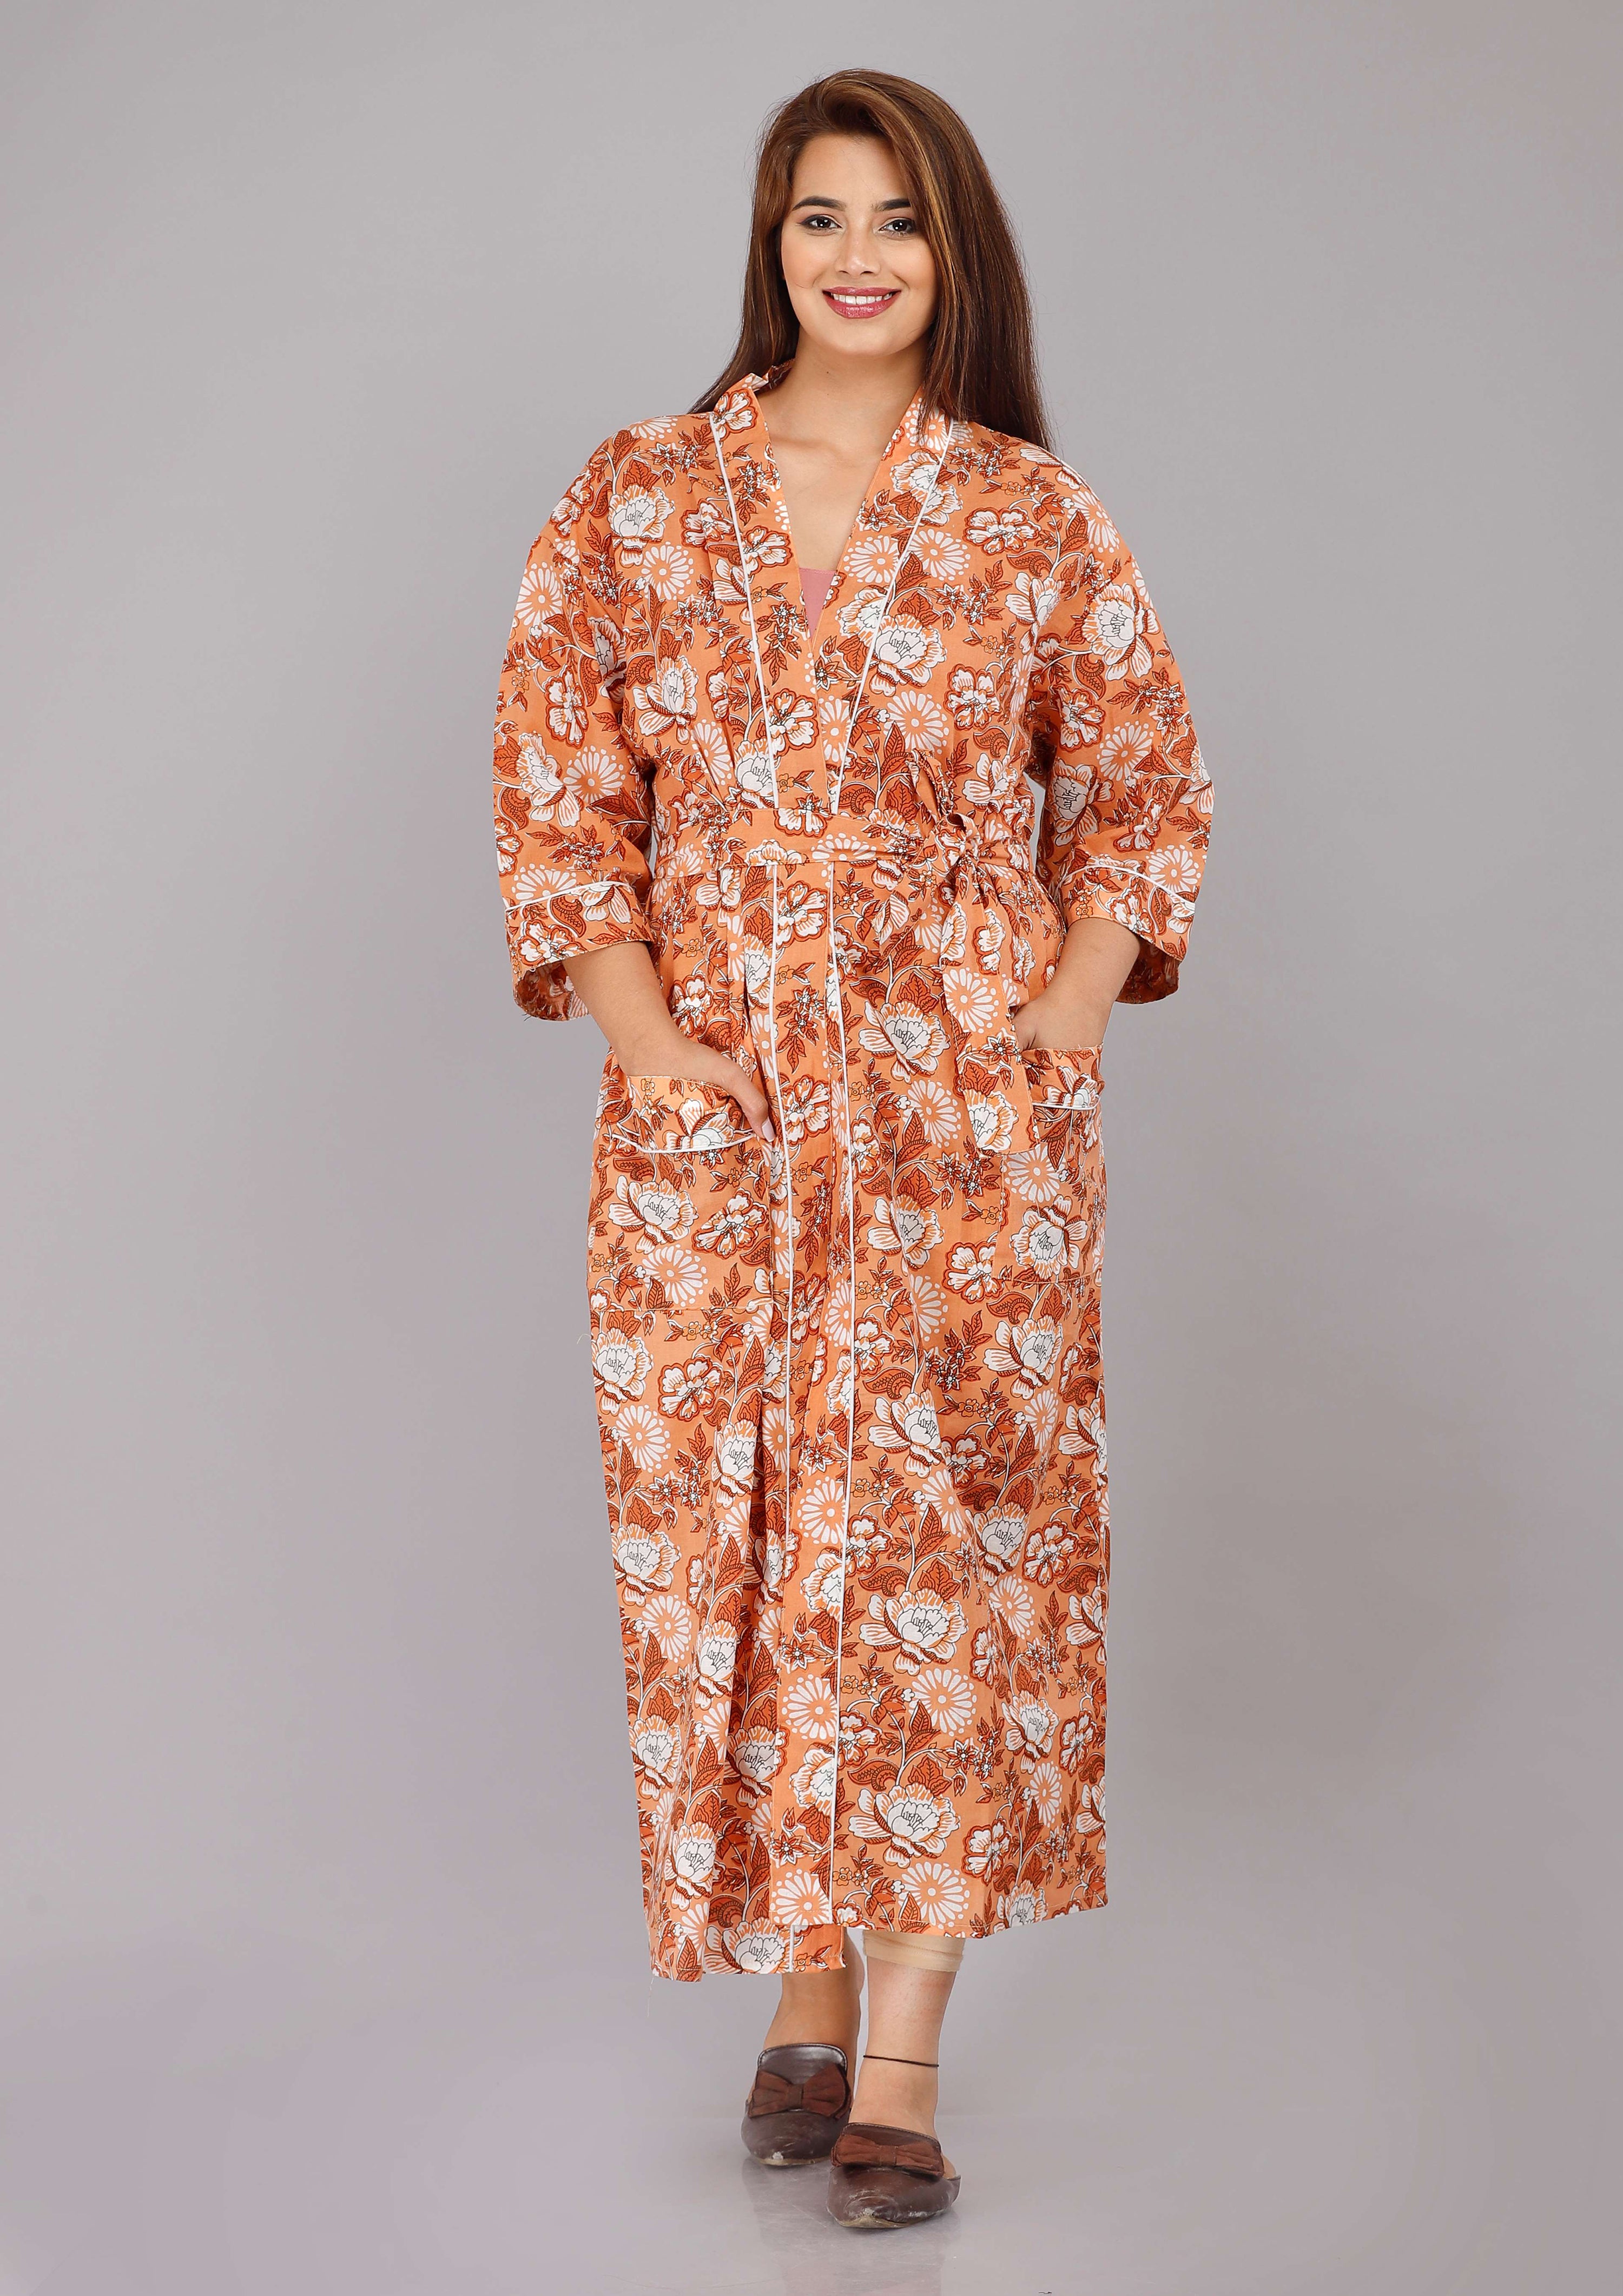 Floral Pattern Kimono Robe Long Bathrobe For Women (Pink)-KM-122